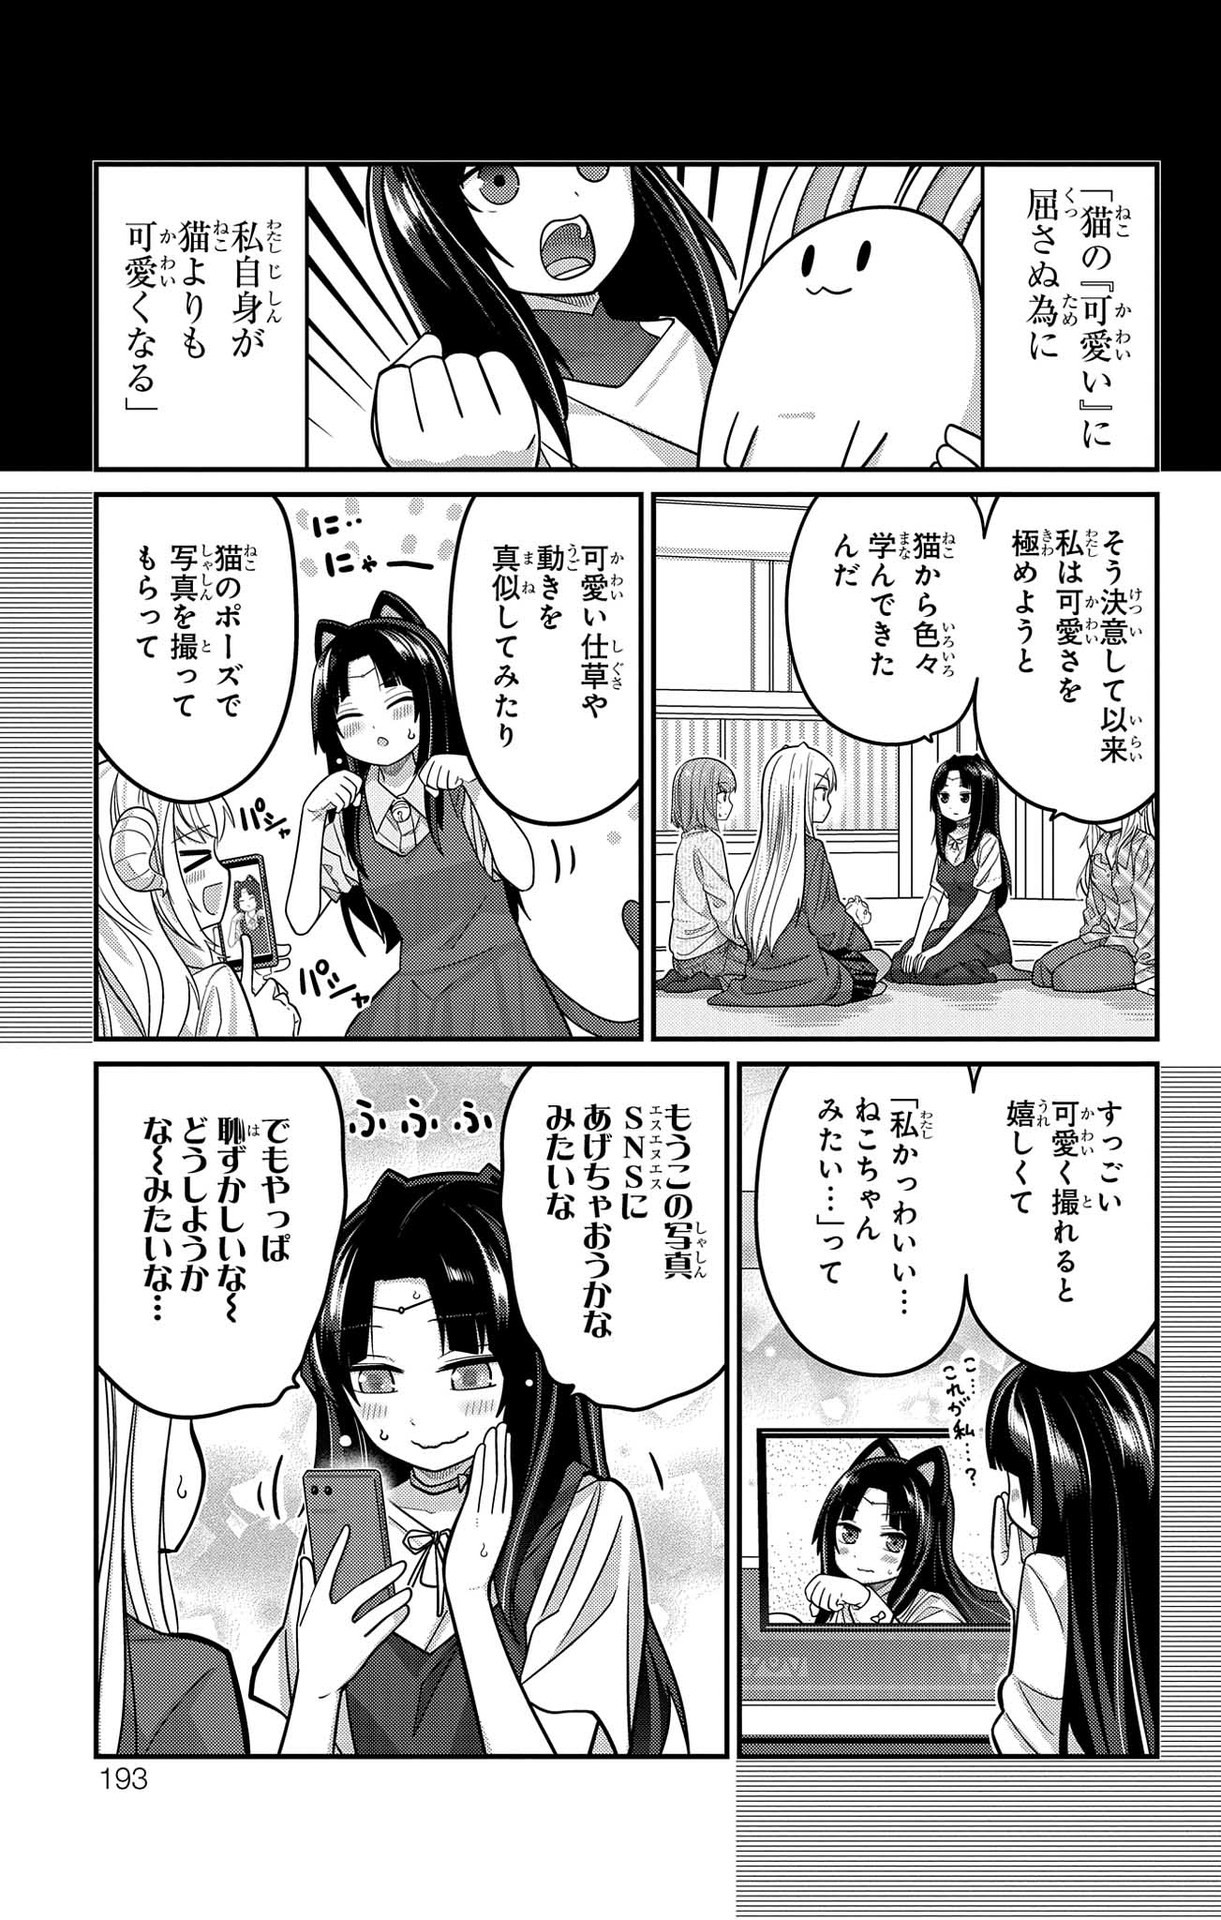 Kawaisugi Crisis - Chapter 96 - Page 3